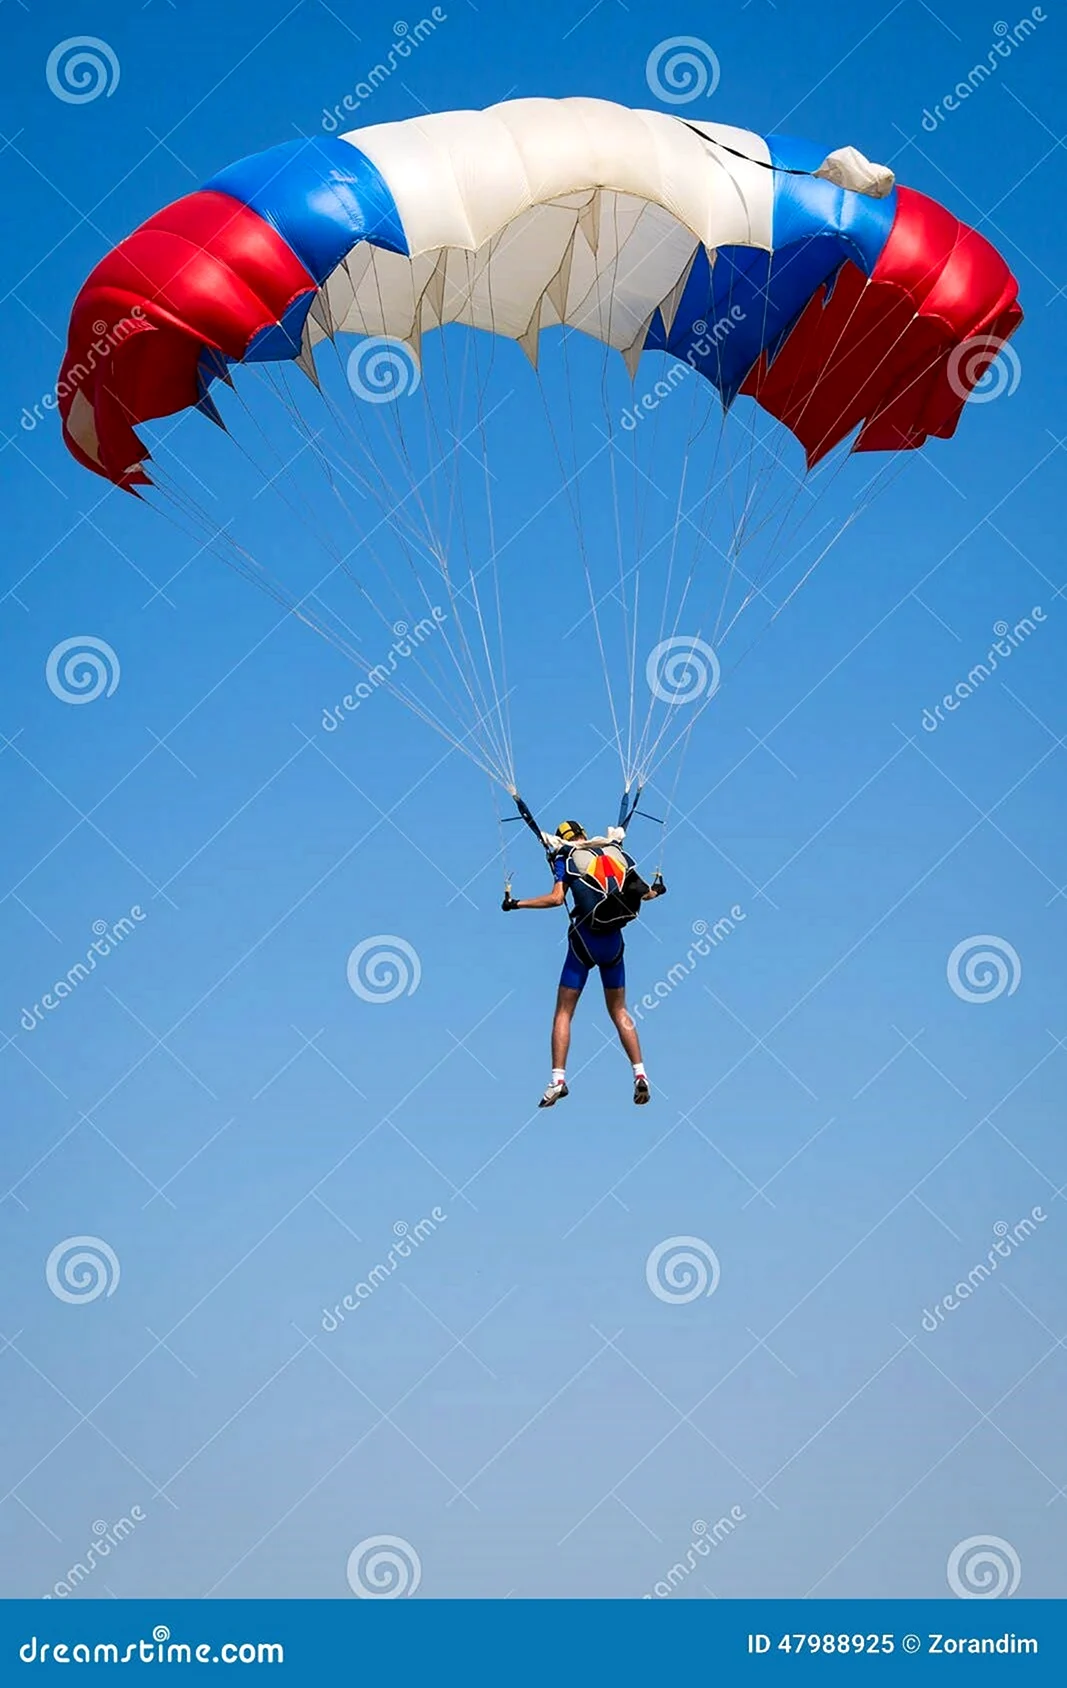 День парашютиста в России картинки. Поздравление